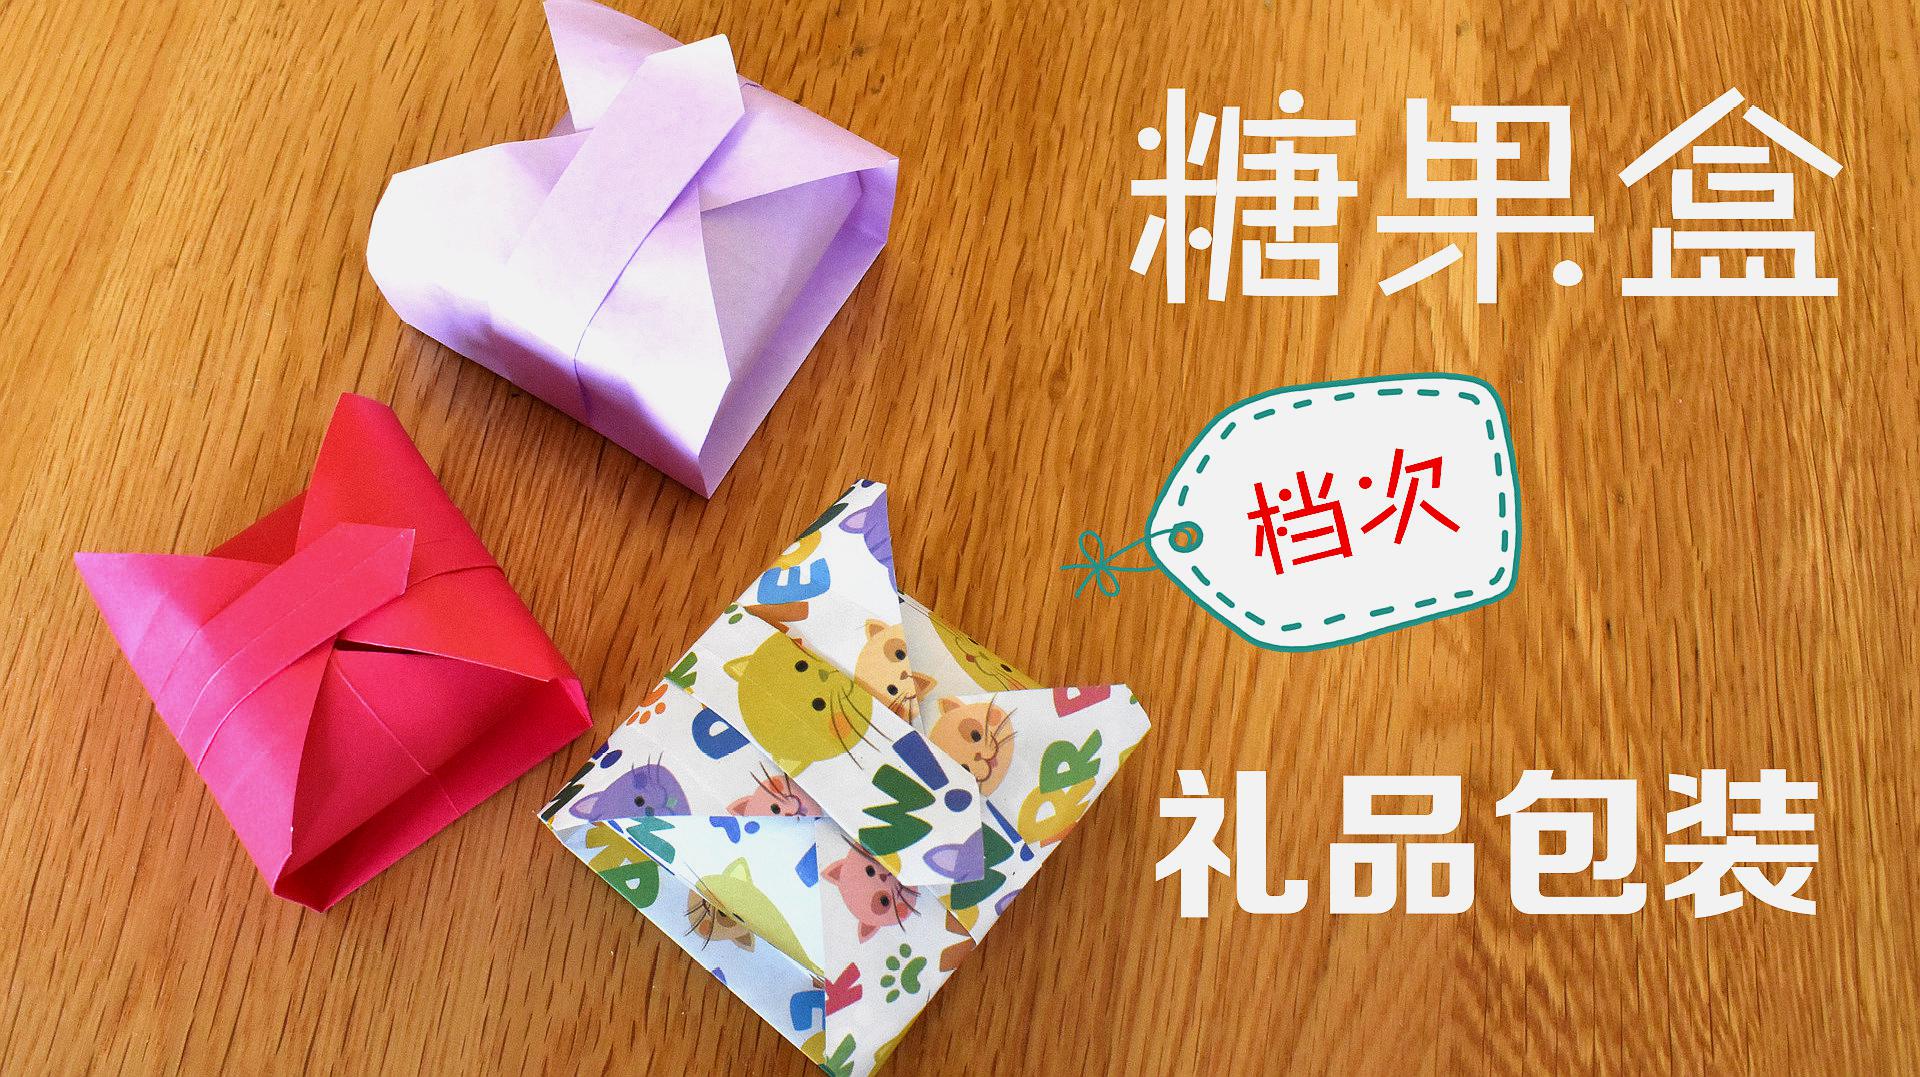 折纸教程:自制一个糖果包装盒,送人礼物有档次